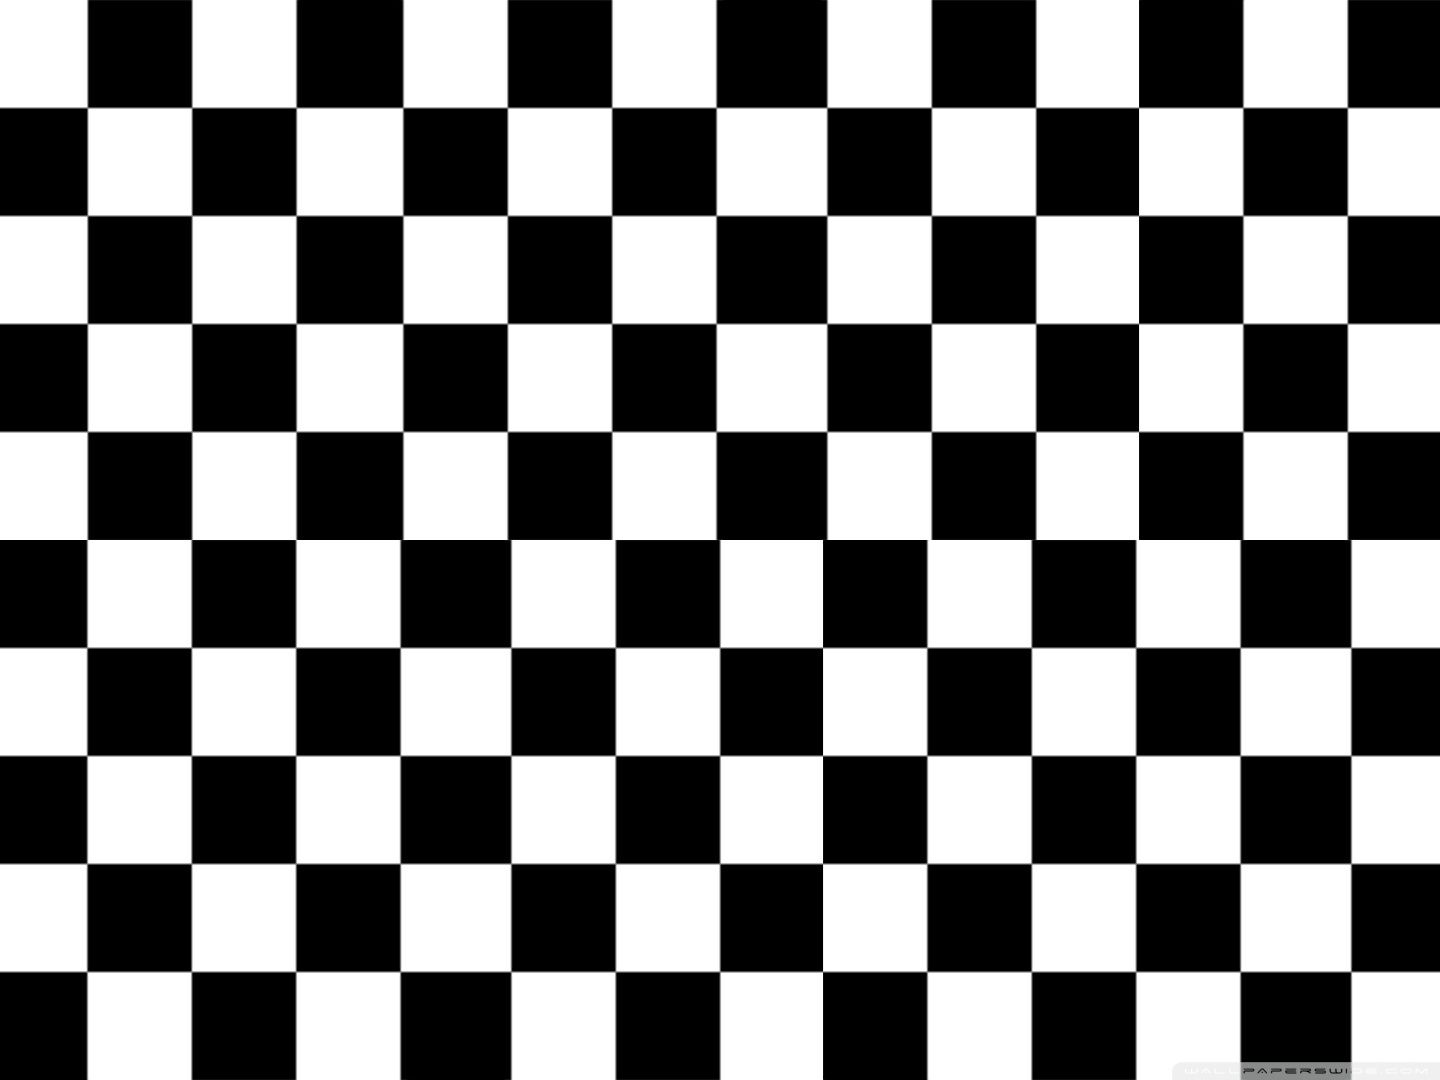 vans checkerboard logo